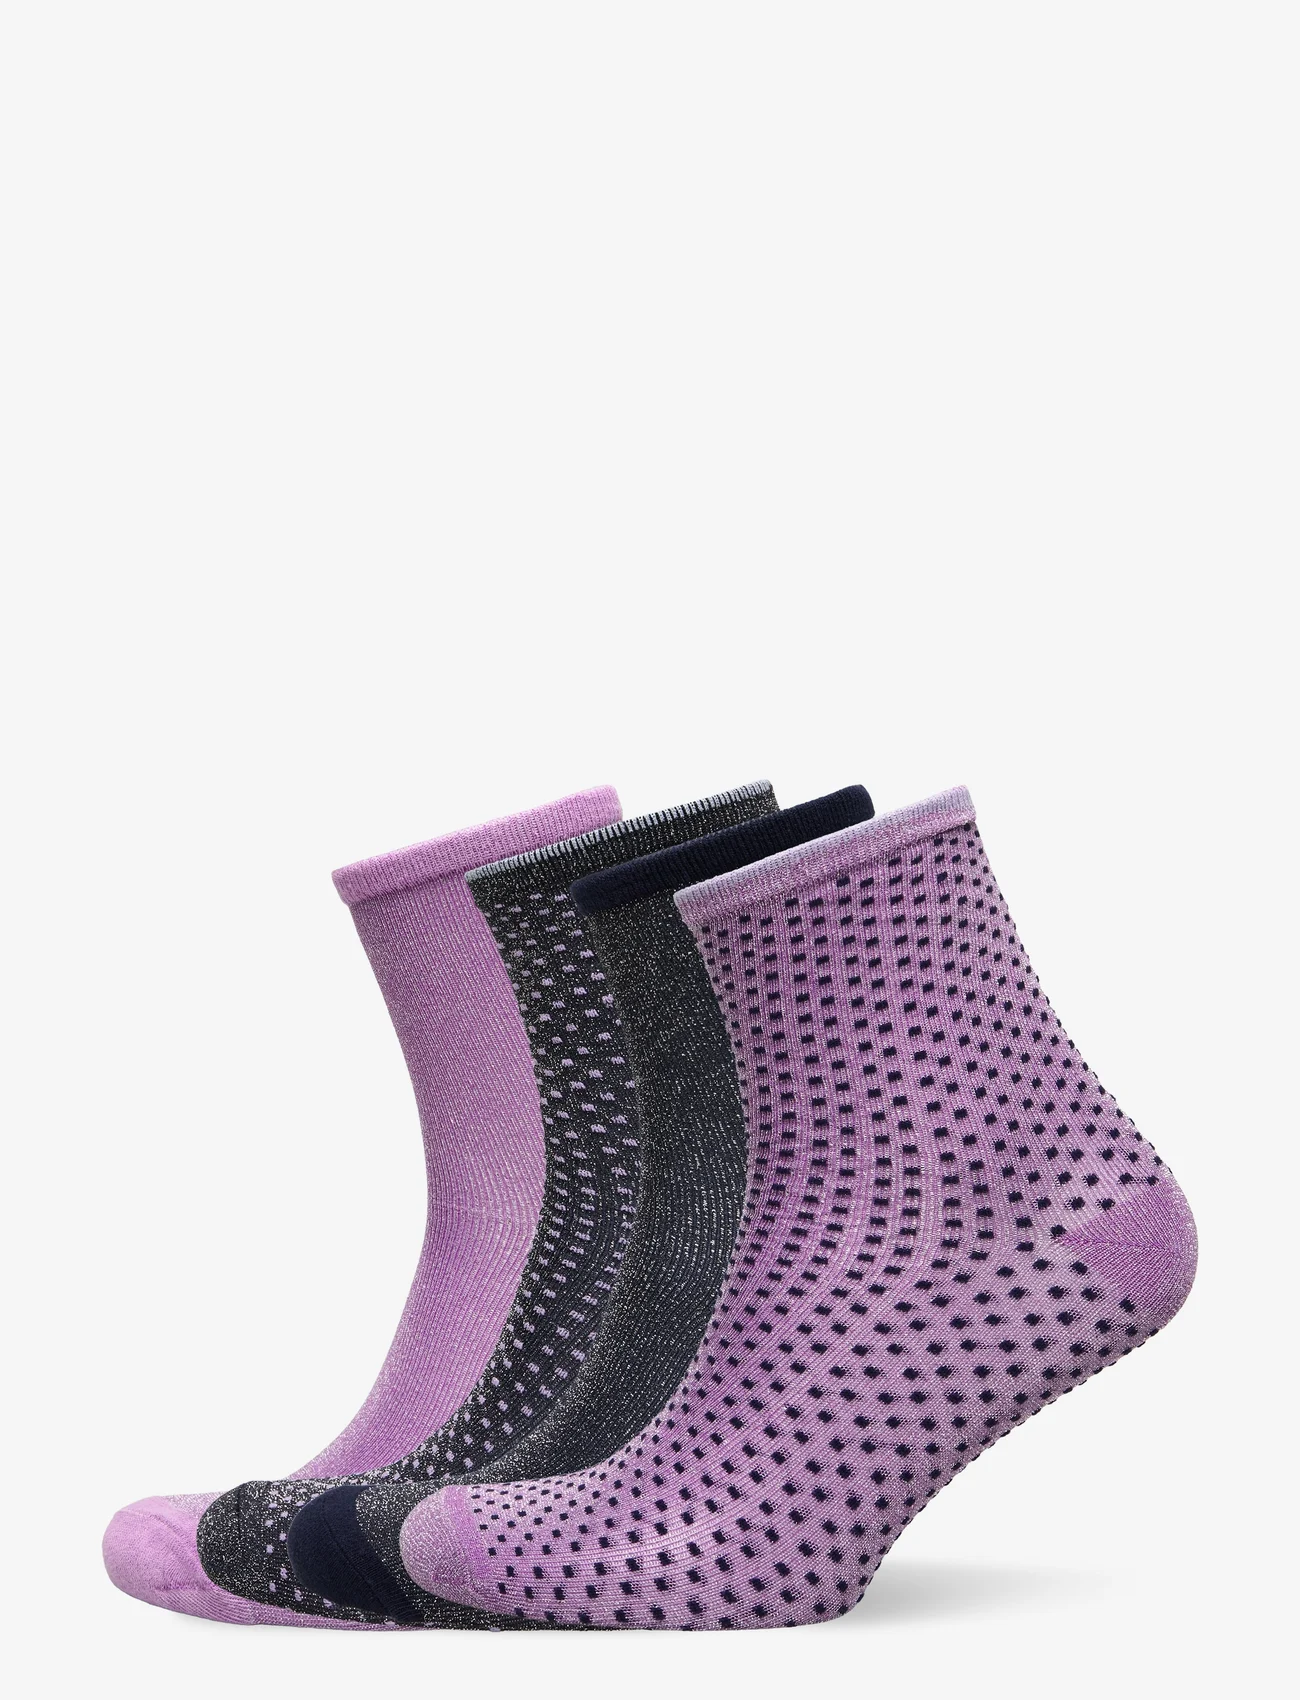 Becksöndergaard - Dina Solid +Dot Sock 4 Pack - lägsta priserna - nightsky/purple - 0